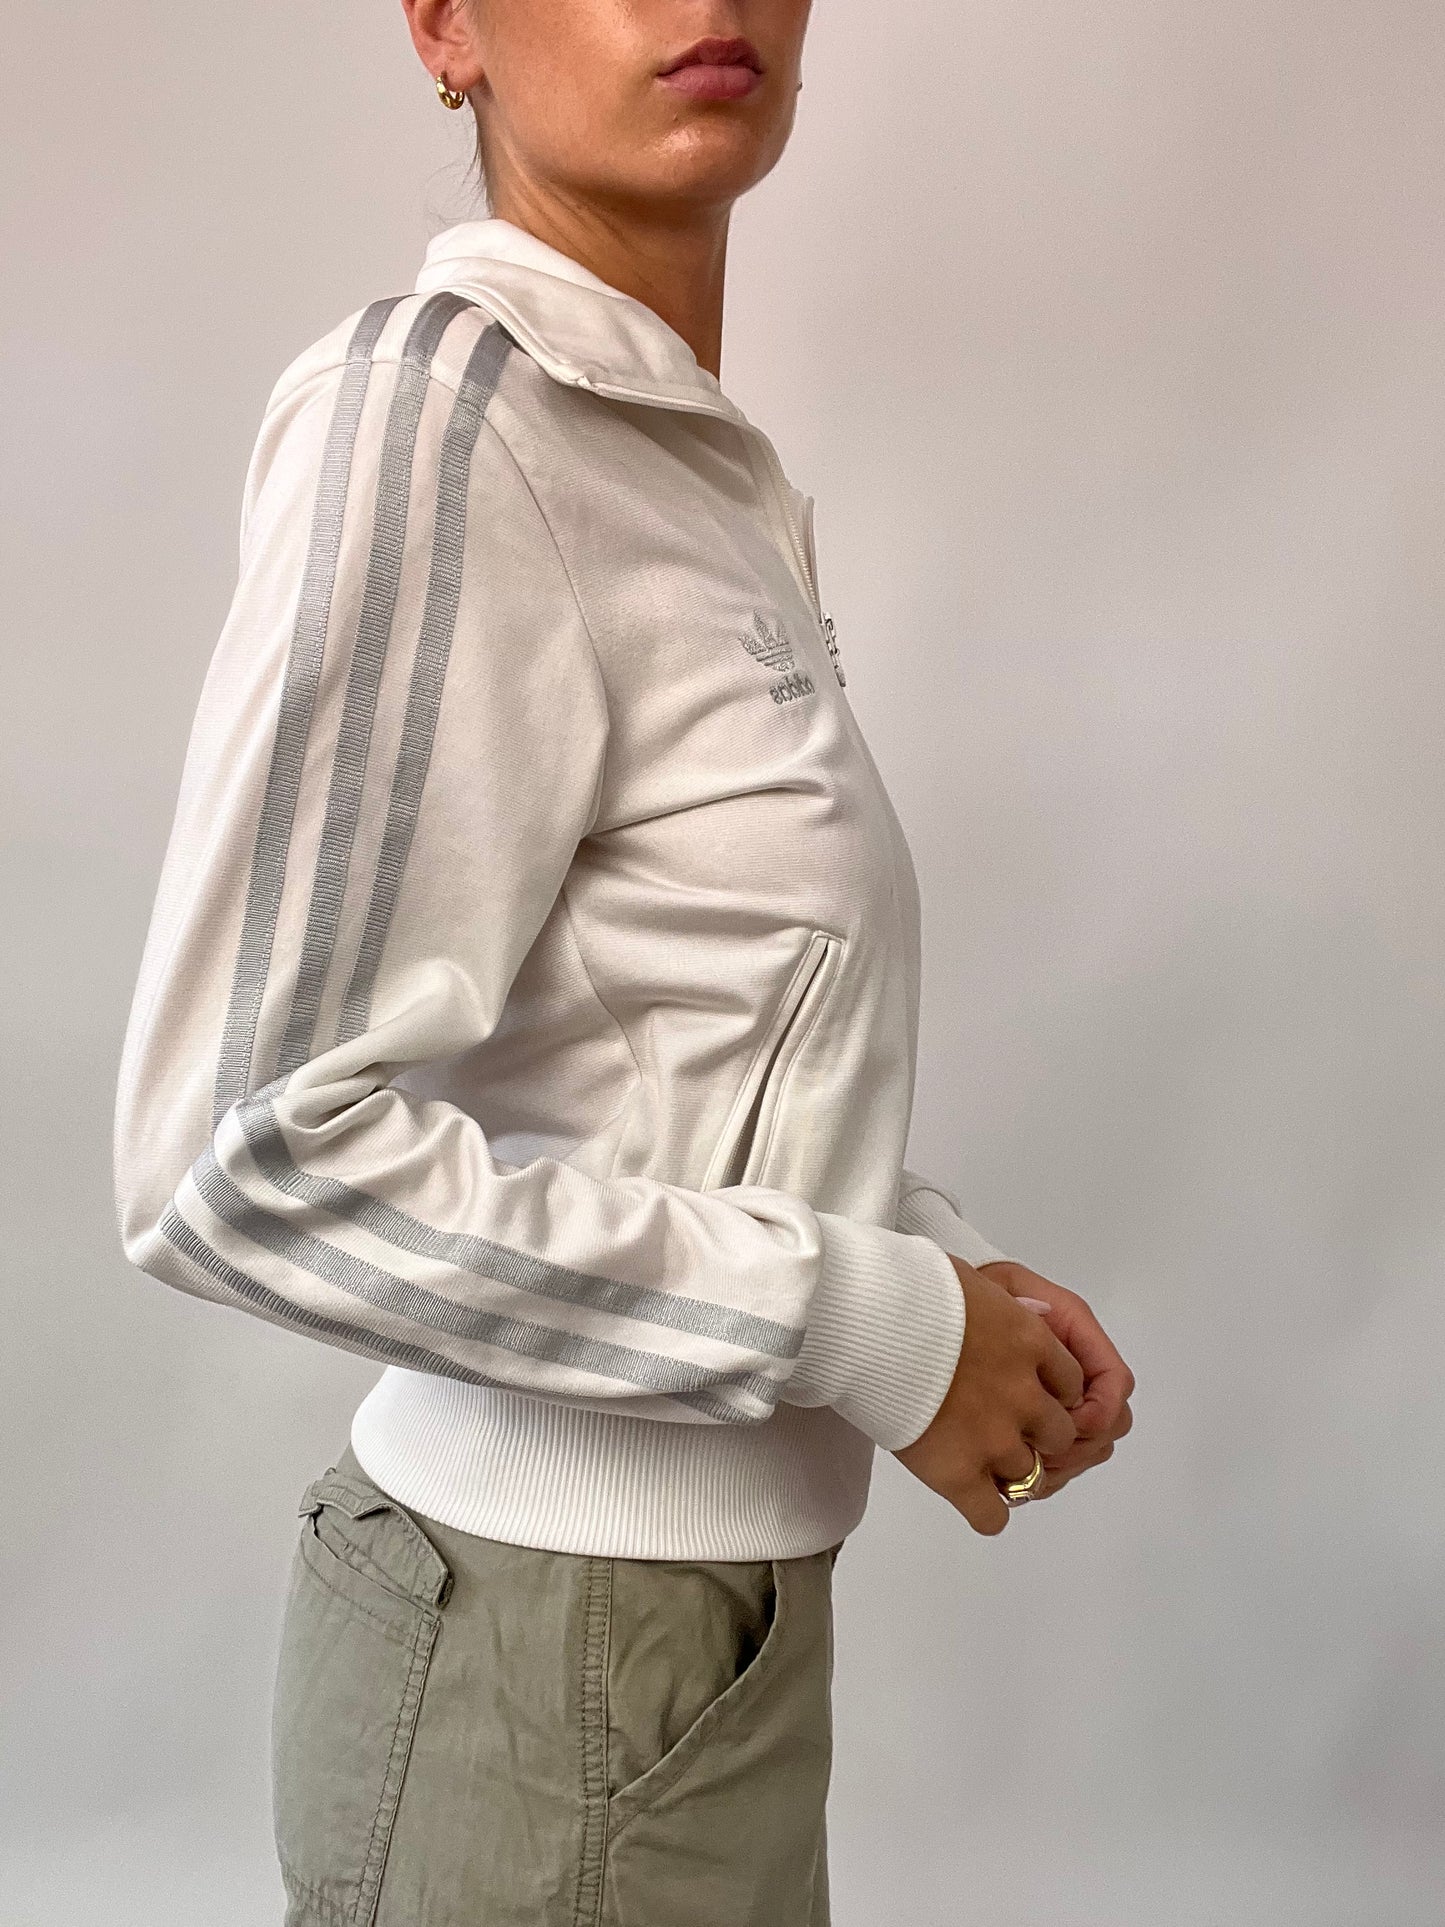 PUB GARDEN DROP | medium white adidas zip up jacket